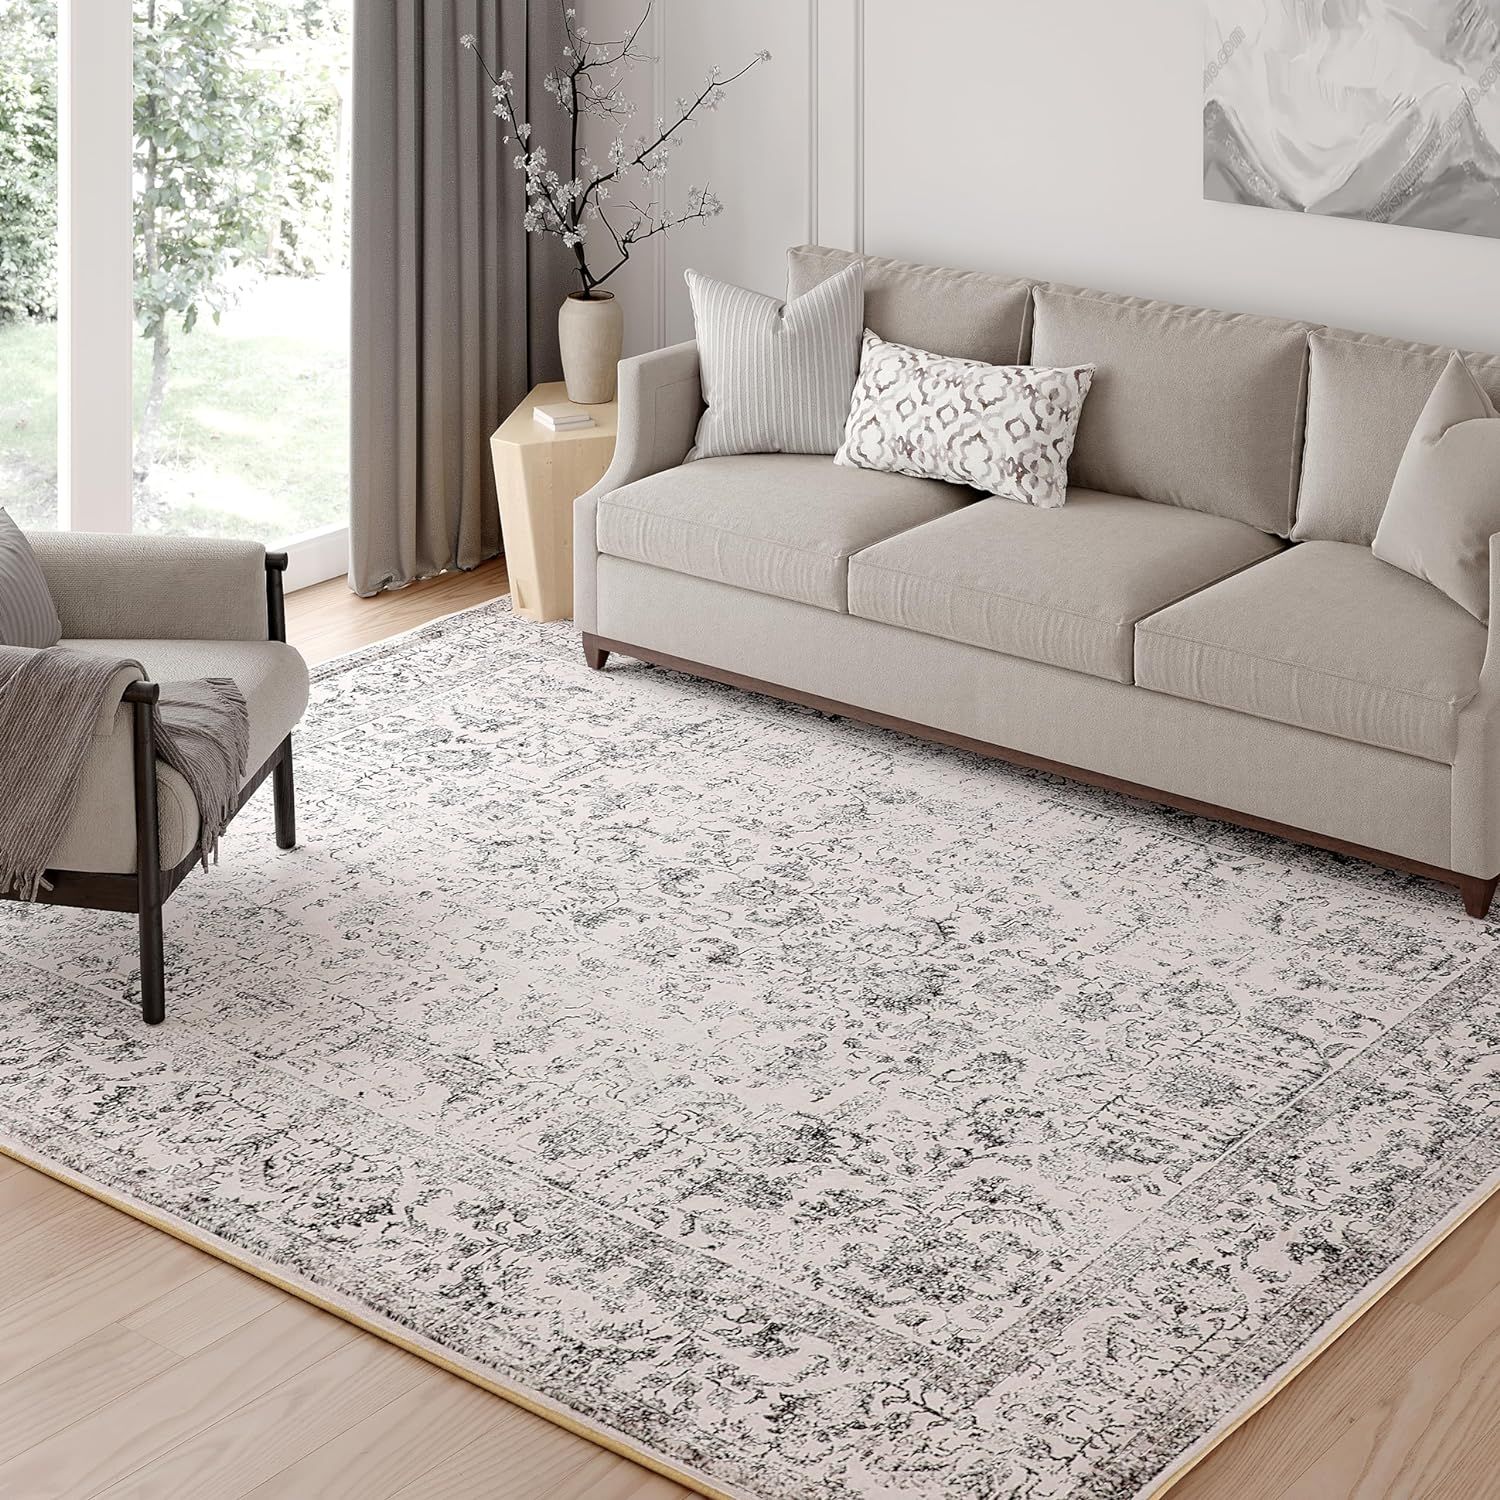 PureCozy Grey Area Rug 5x7 Indoor Vintage Living Room Carpet Washable Distressed Rug Gray Floral ... | Amazon (US)